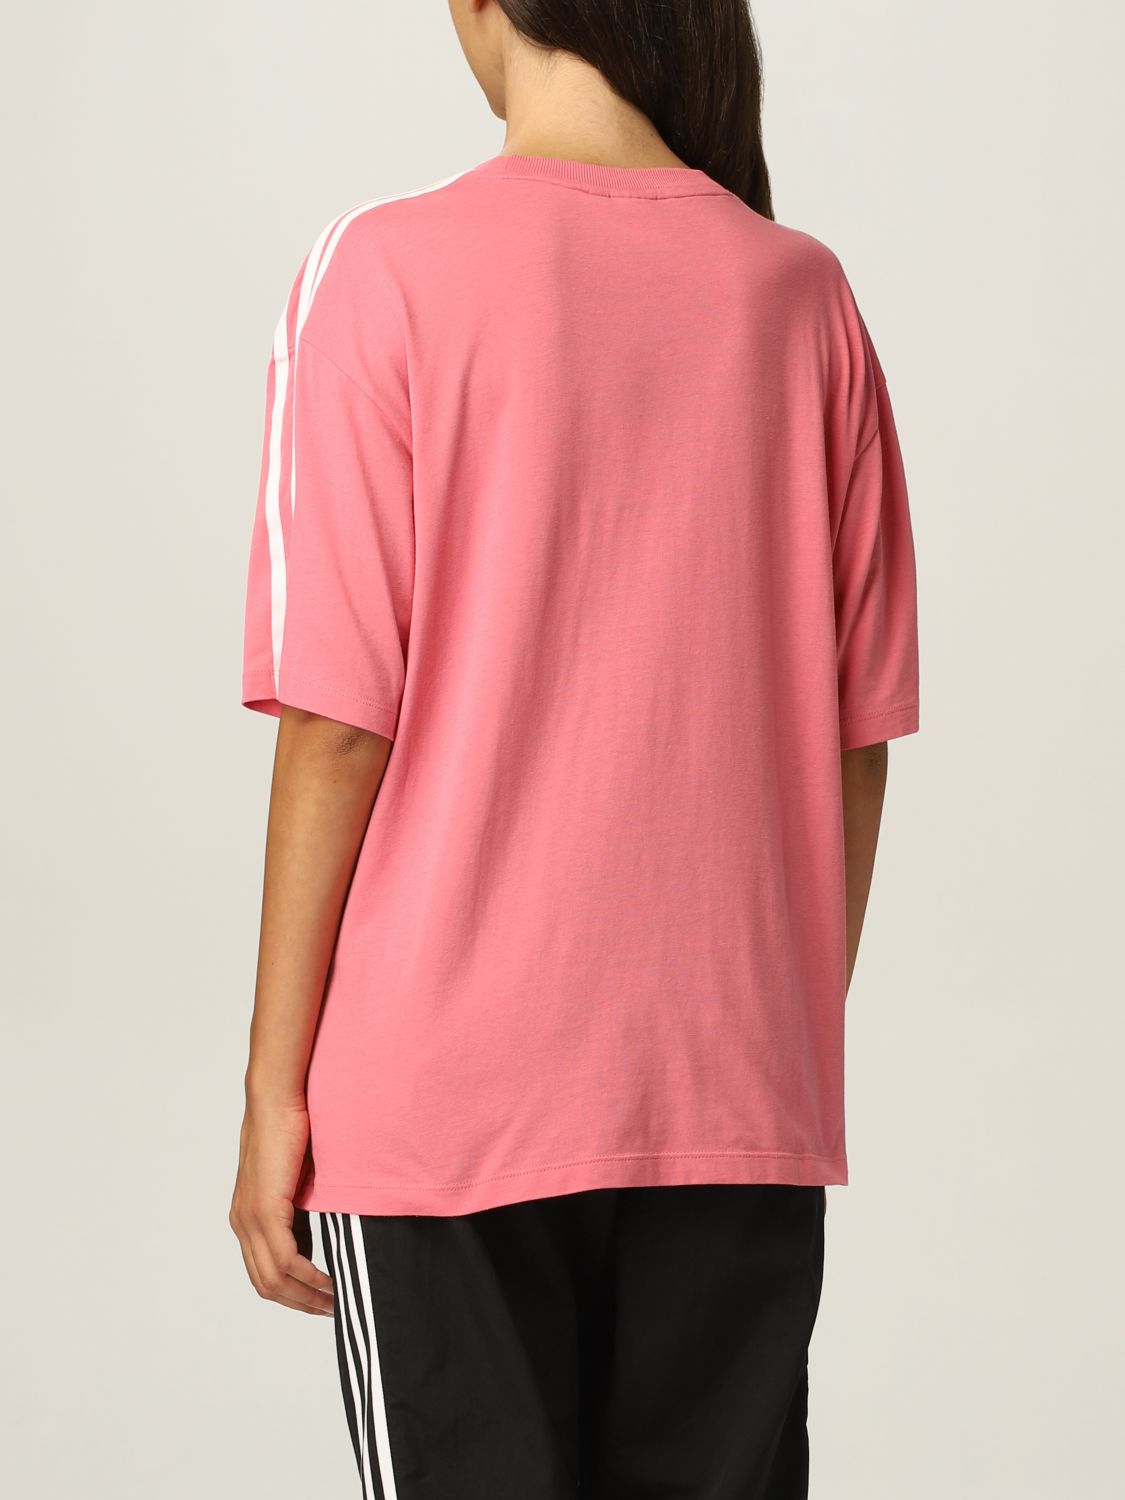 ADIDAS ORIGINALS: Tシャツ レディース - ピンク | Tシャツ Adidas Originals H37797 GIGLIO.COM